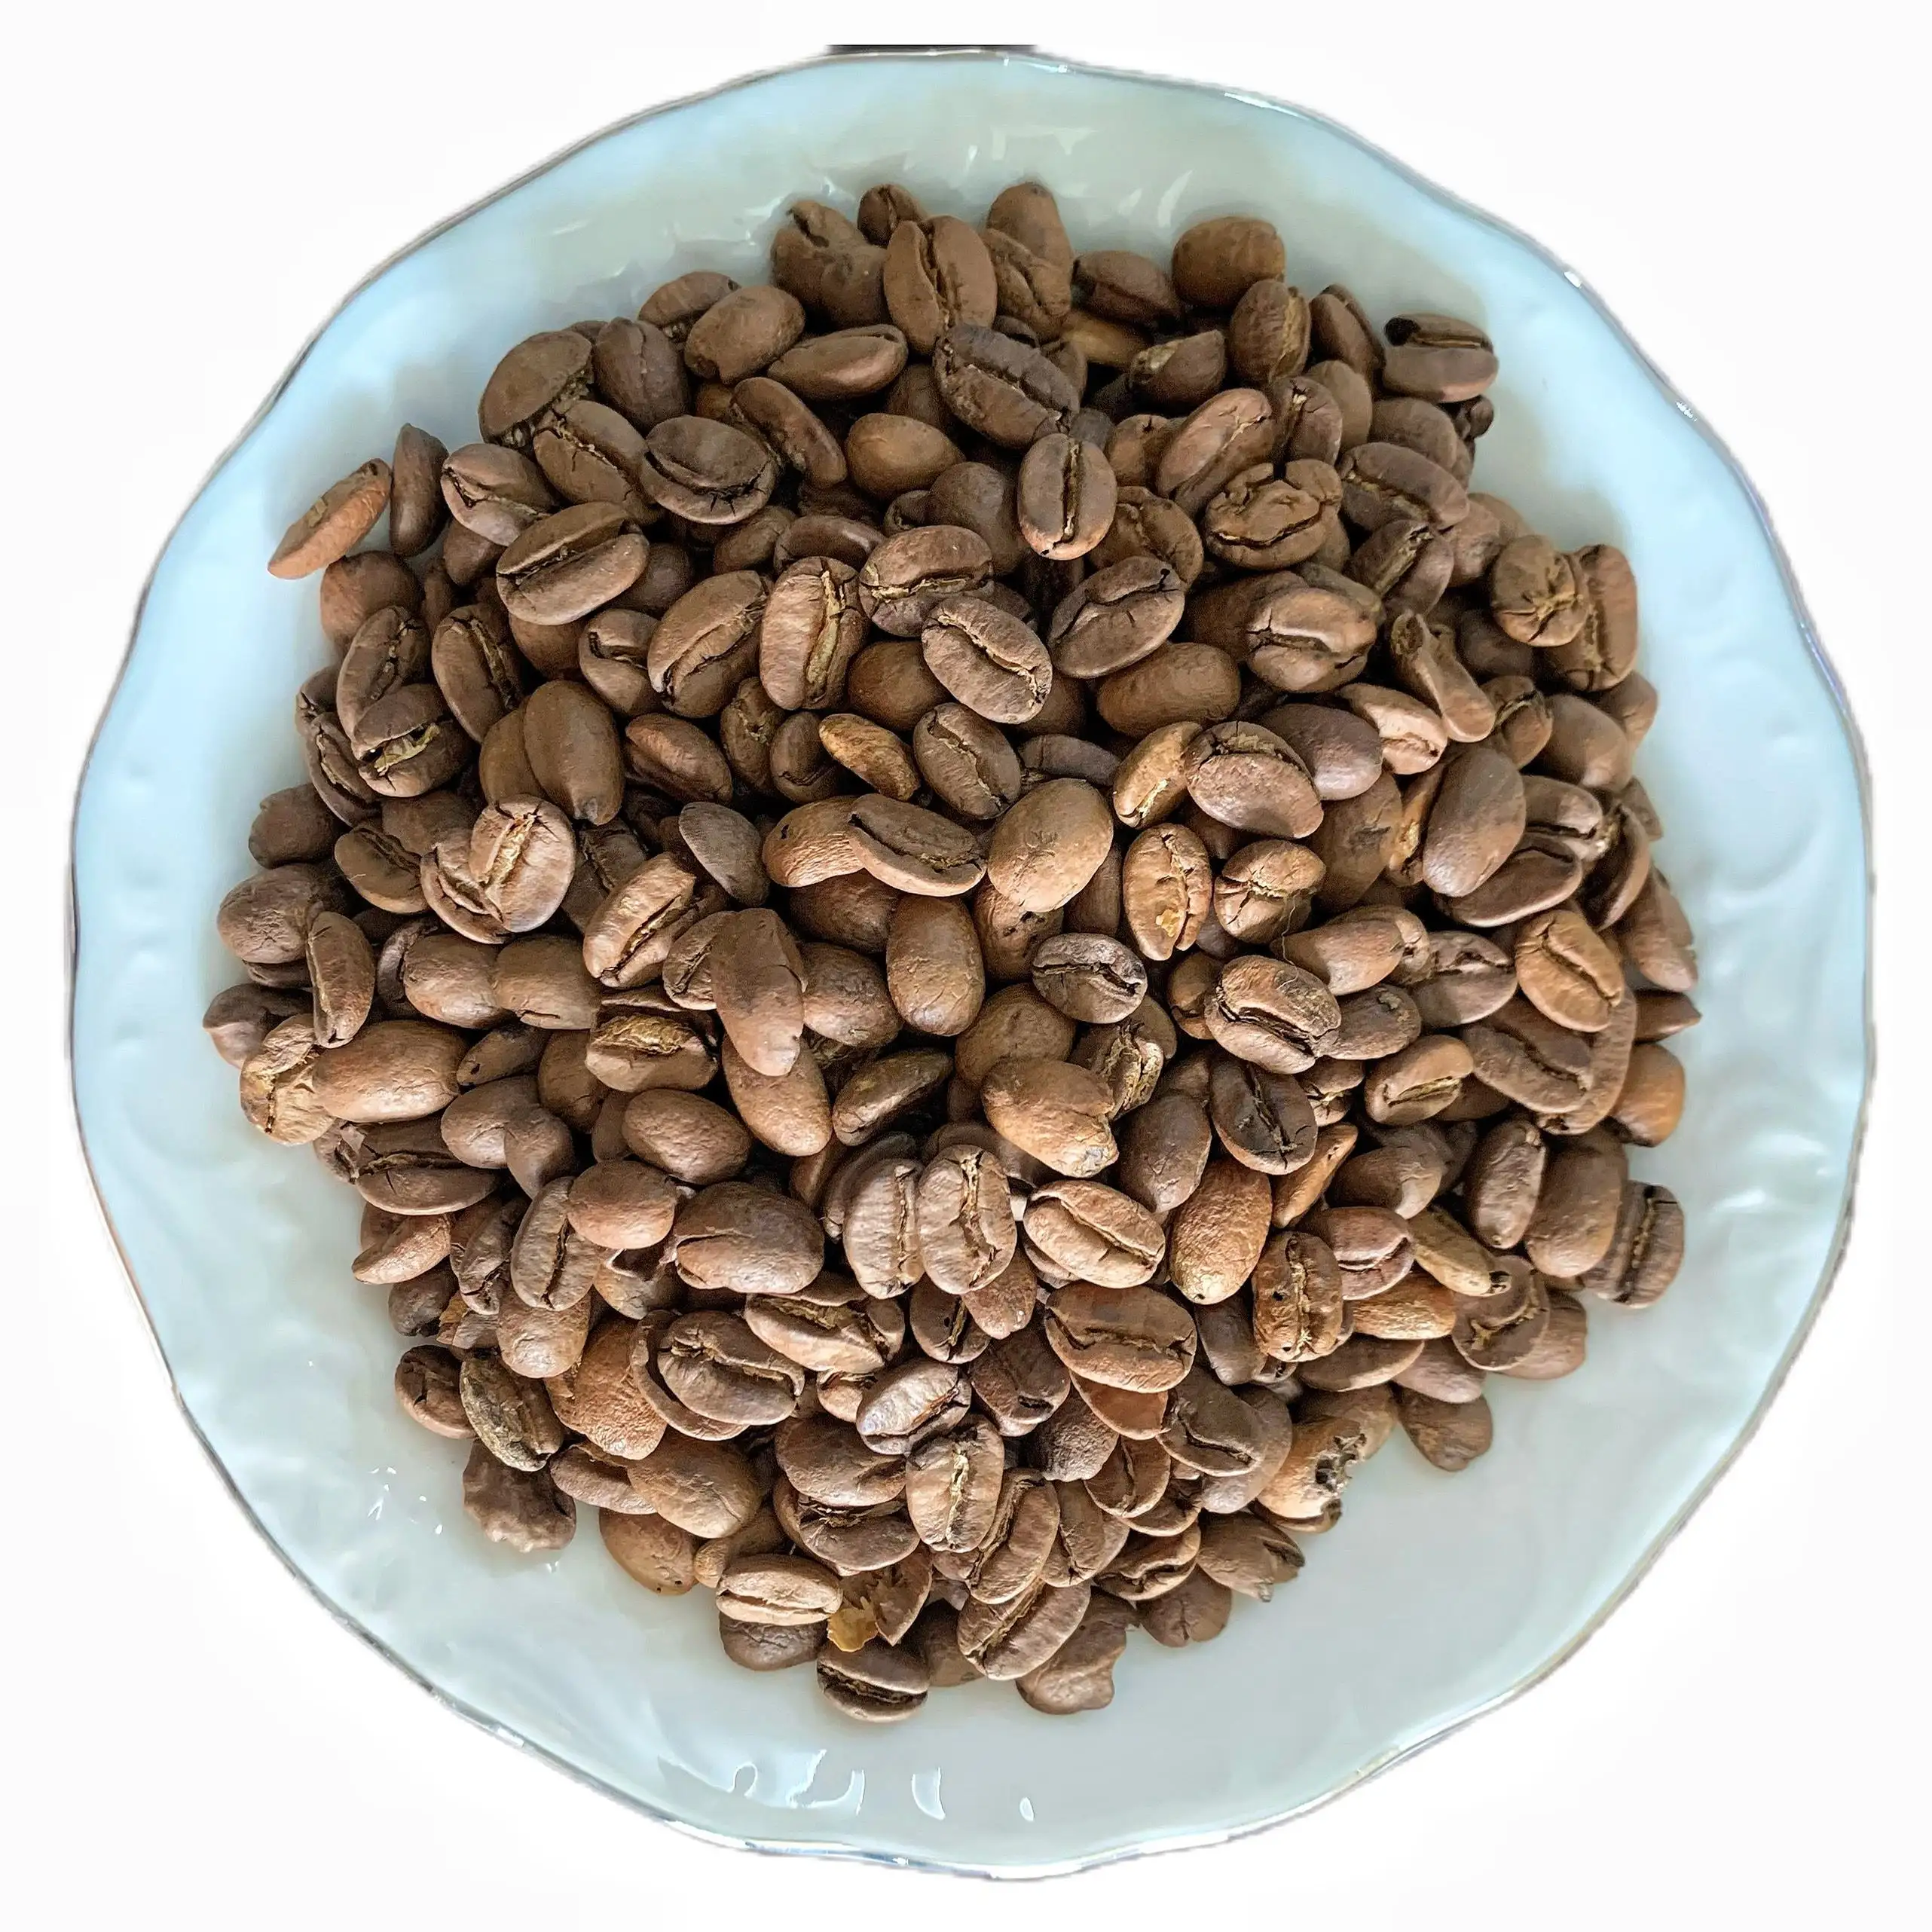 Chinesische Fabrik mahlt rein manuell Kaffee-Essenz